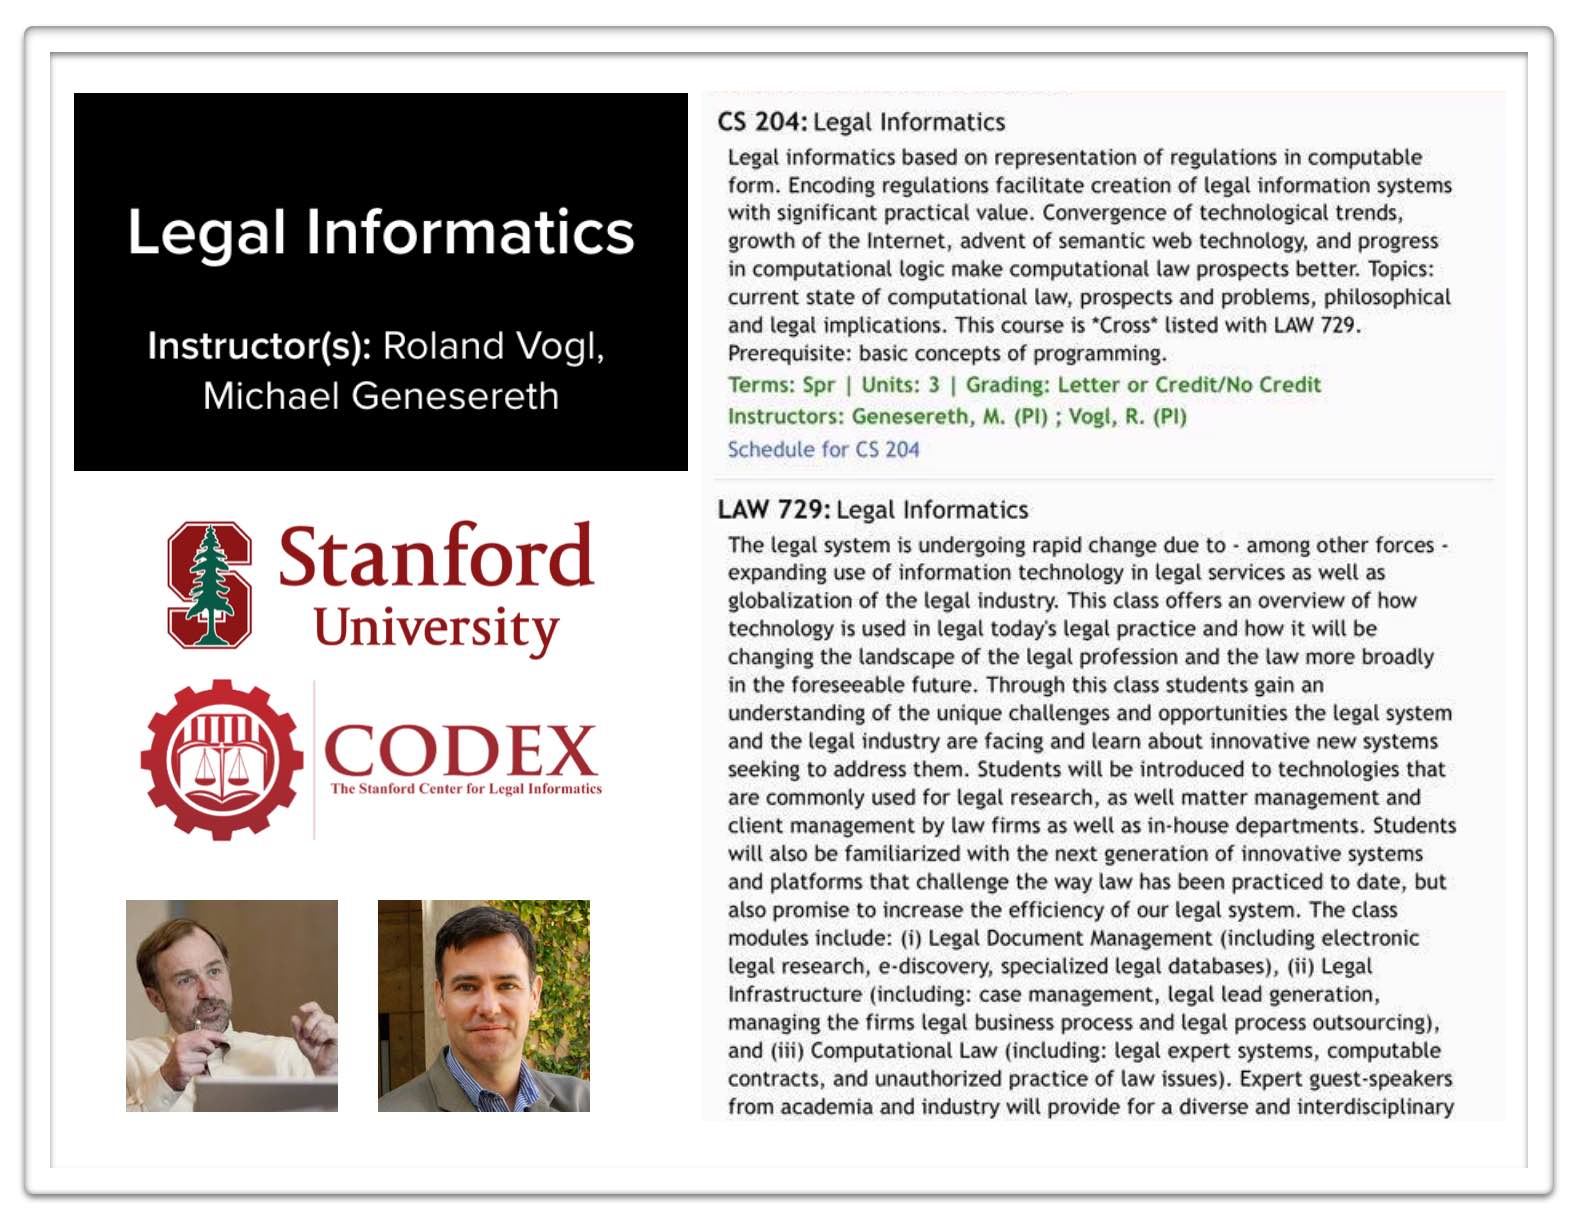 Roland Vogl - Director (Program), Staff - Stanford Law School